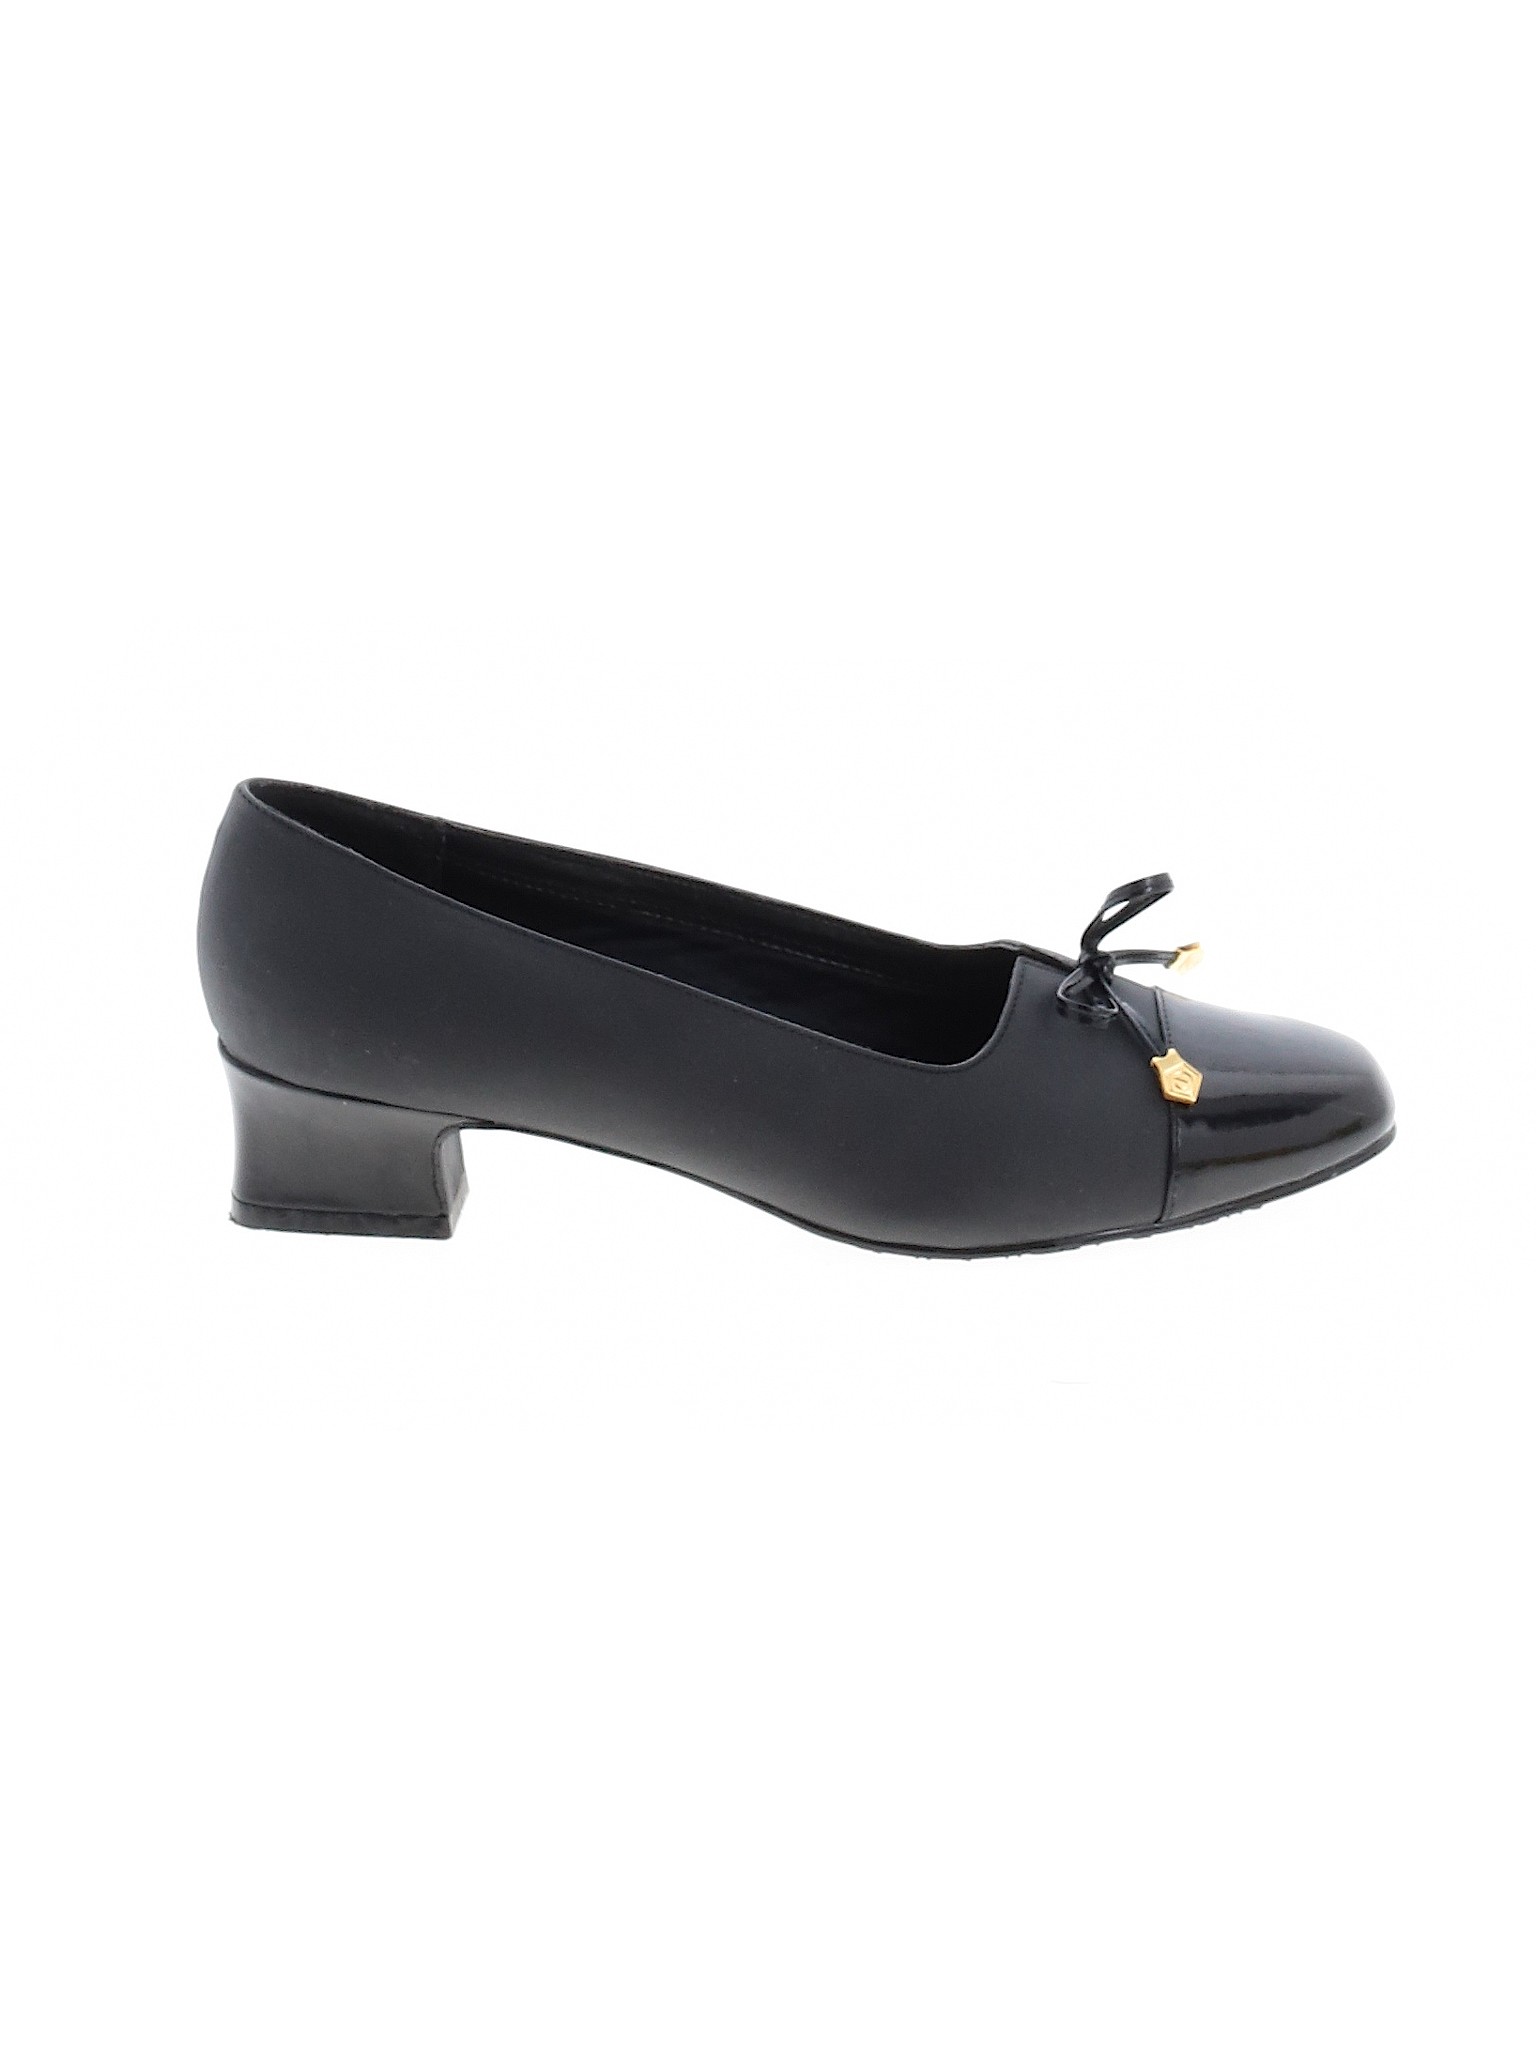 Soft Style Women Black Heels US 8.5 | eBay